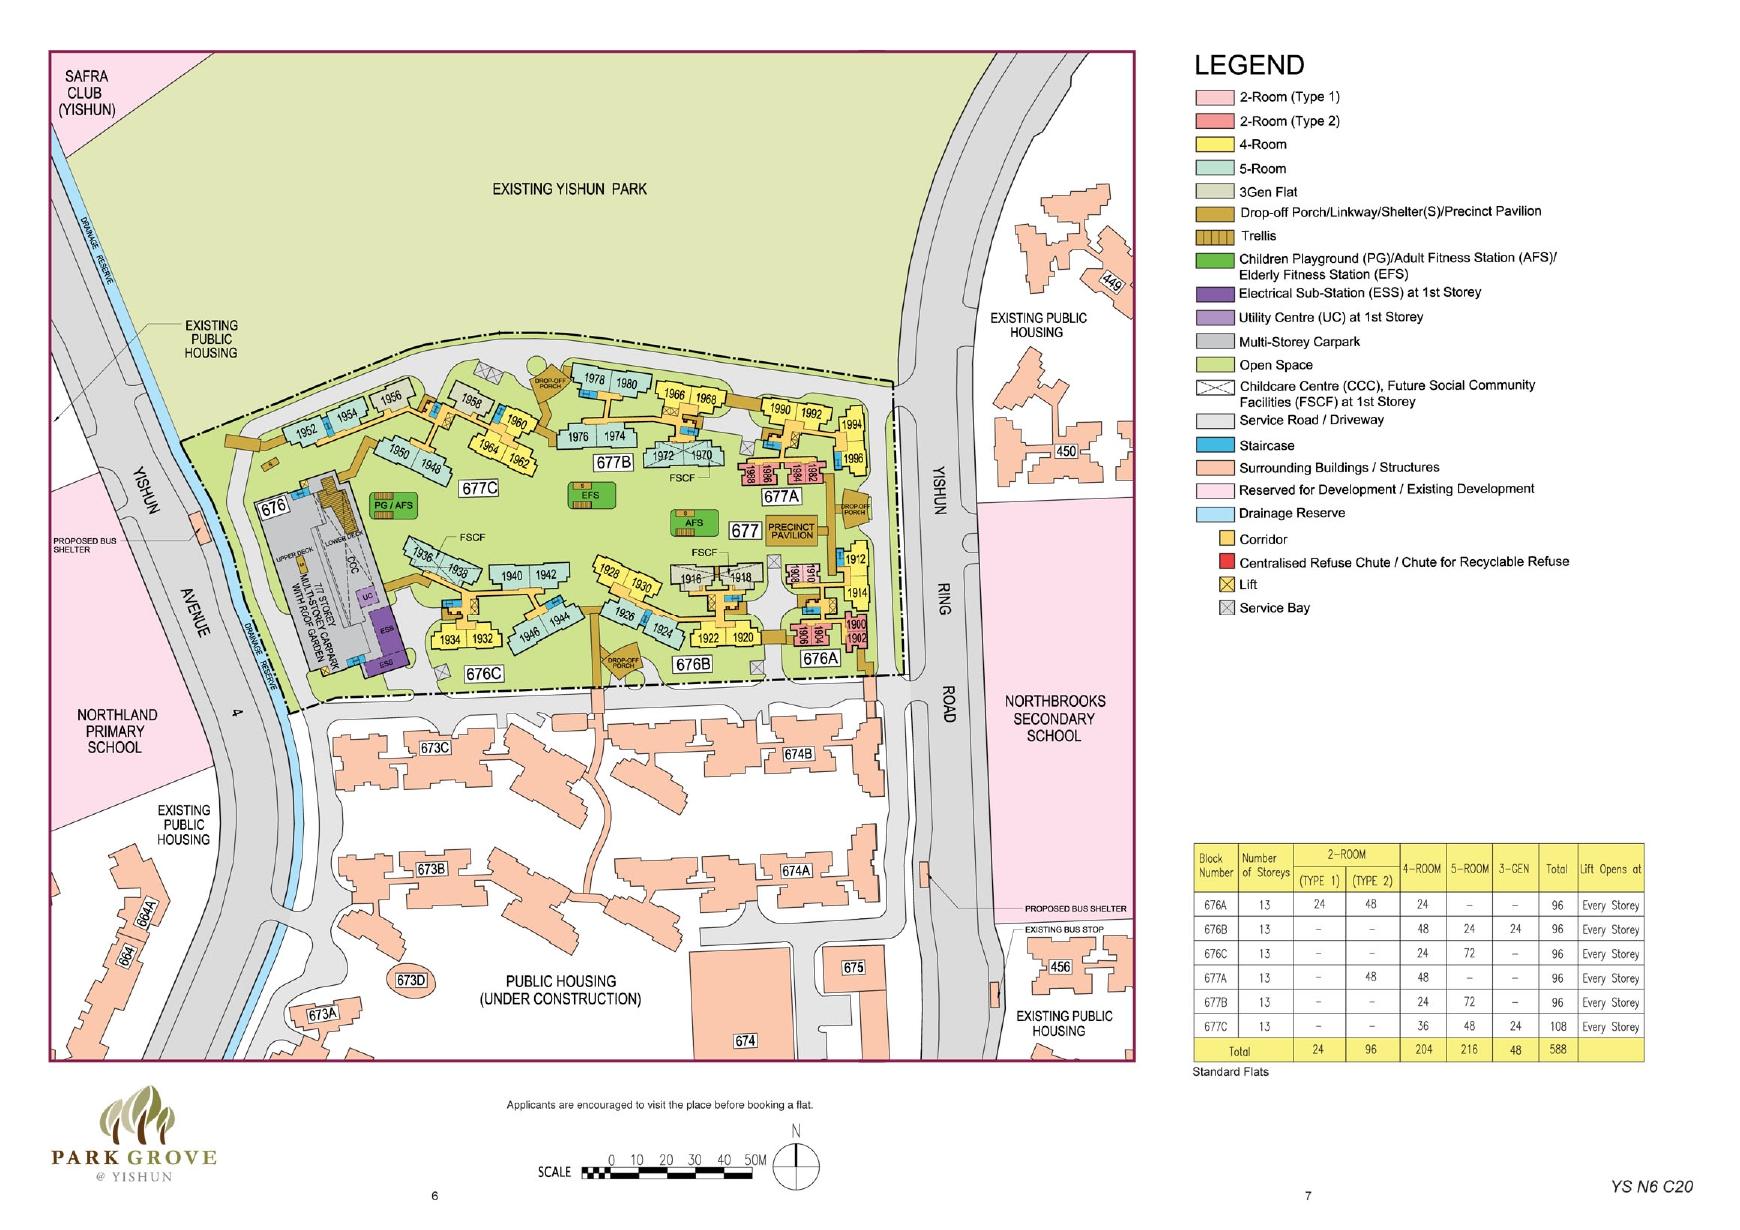 Park Grove @ Yishun Site Plan